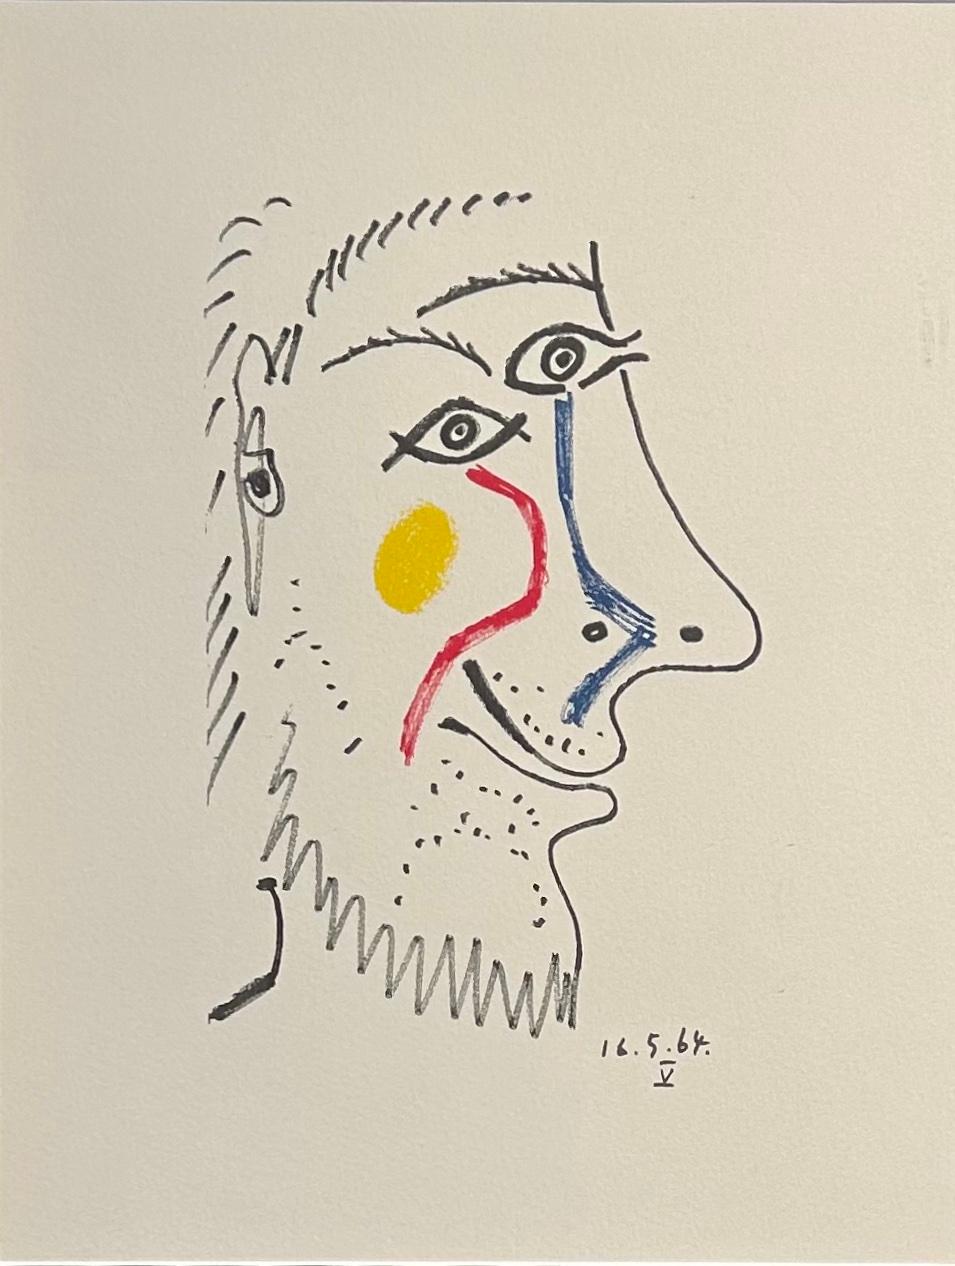 Lithographie en couleurs sur papier Arches '16.5.64.V' de 'Le Goût de Bonheur'.  - Print de Pablo Picasso